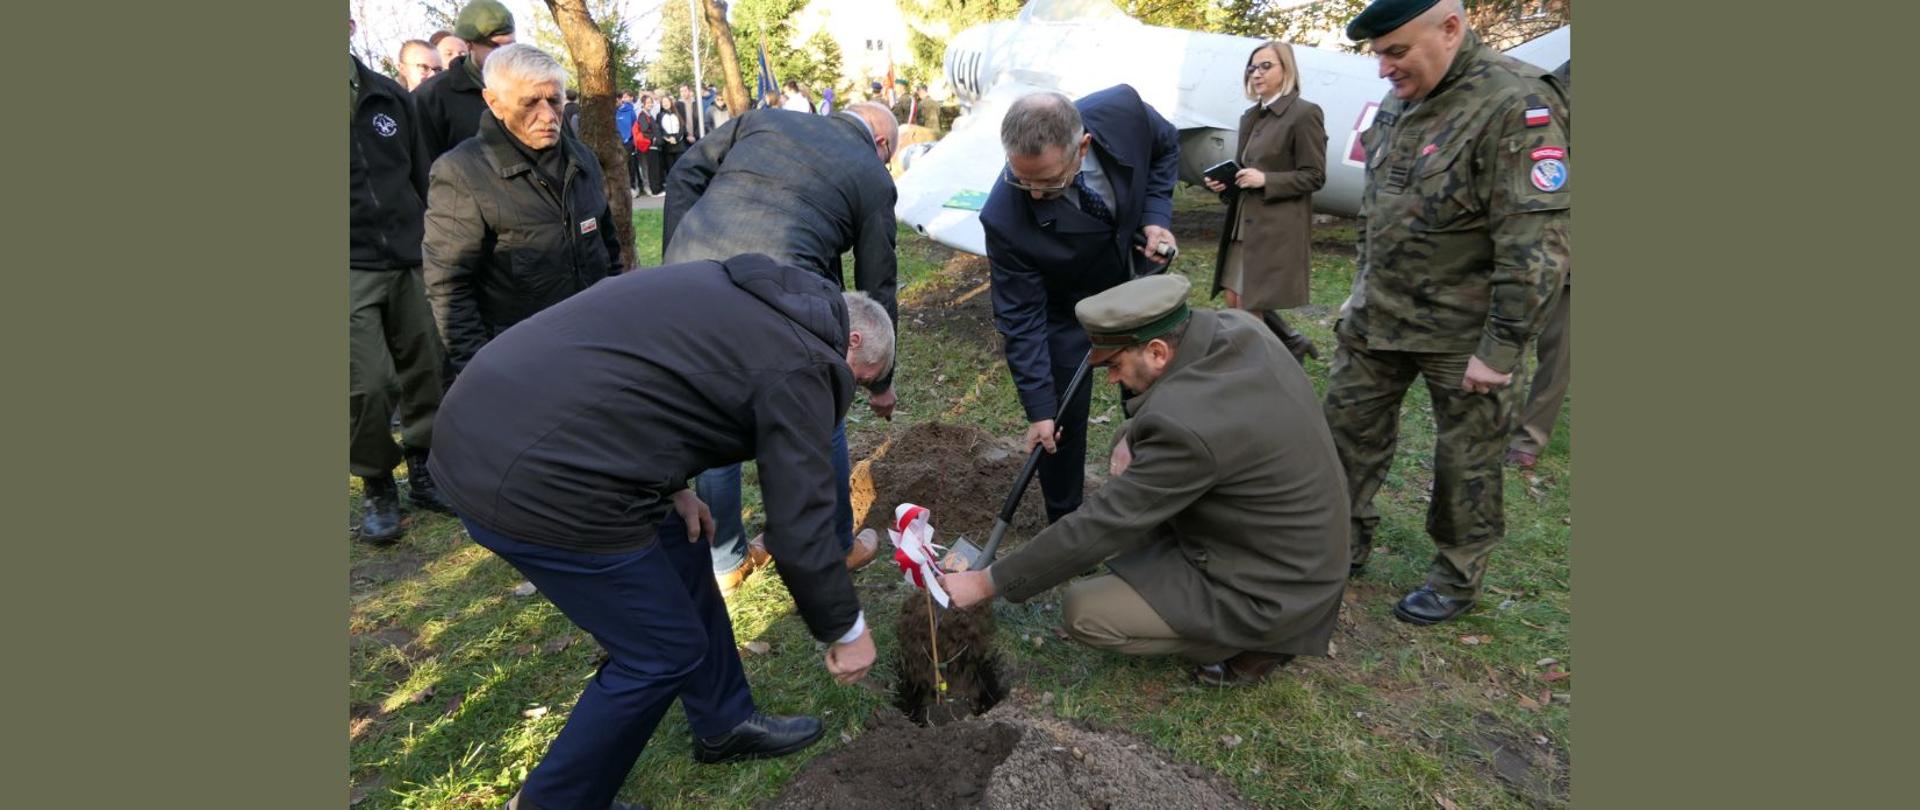 Starosta Lipski i Przewodniczący Rady Powiatu Lipskiego przysypują sadzonkę dębu ziemią.